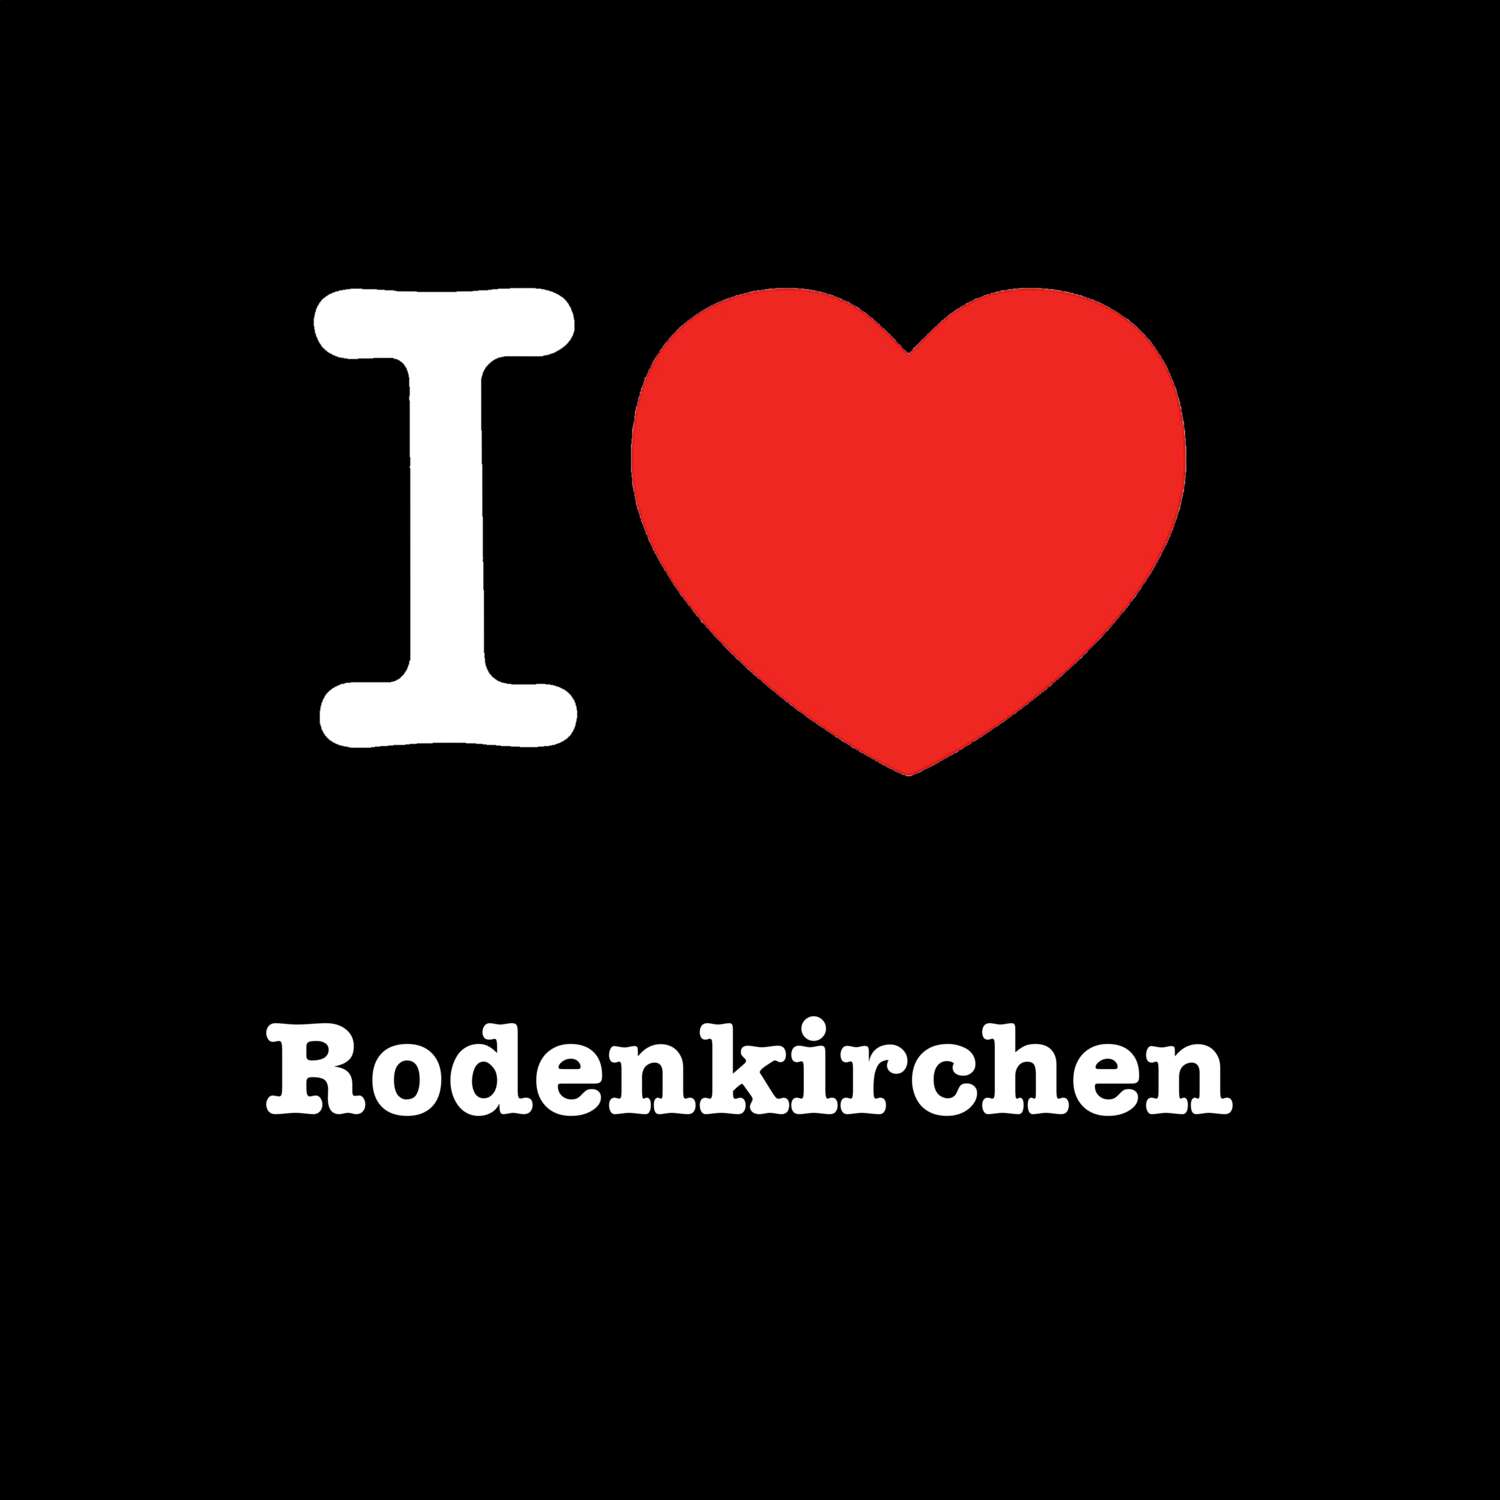 Rodenkirchen T-Shirt »I love«